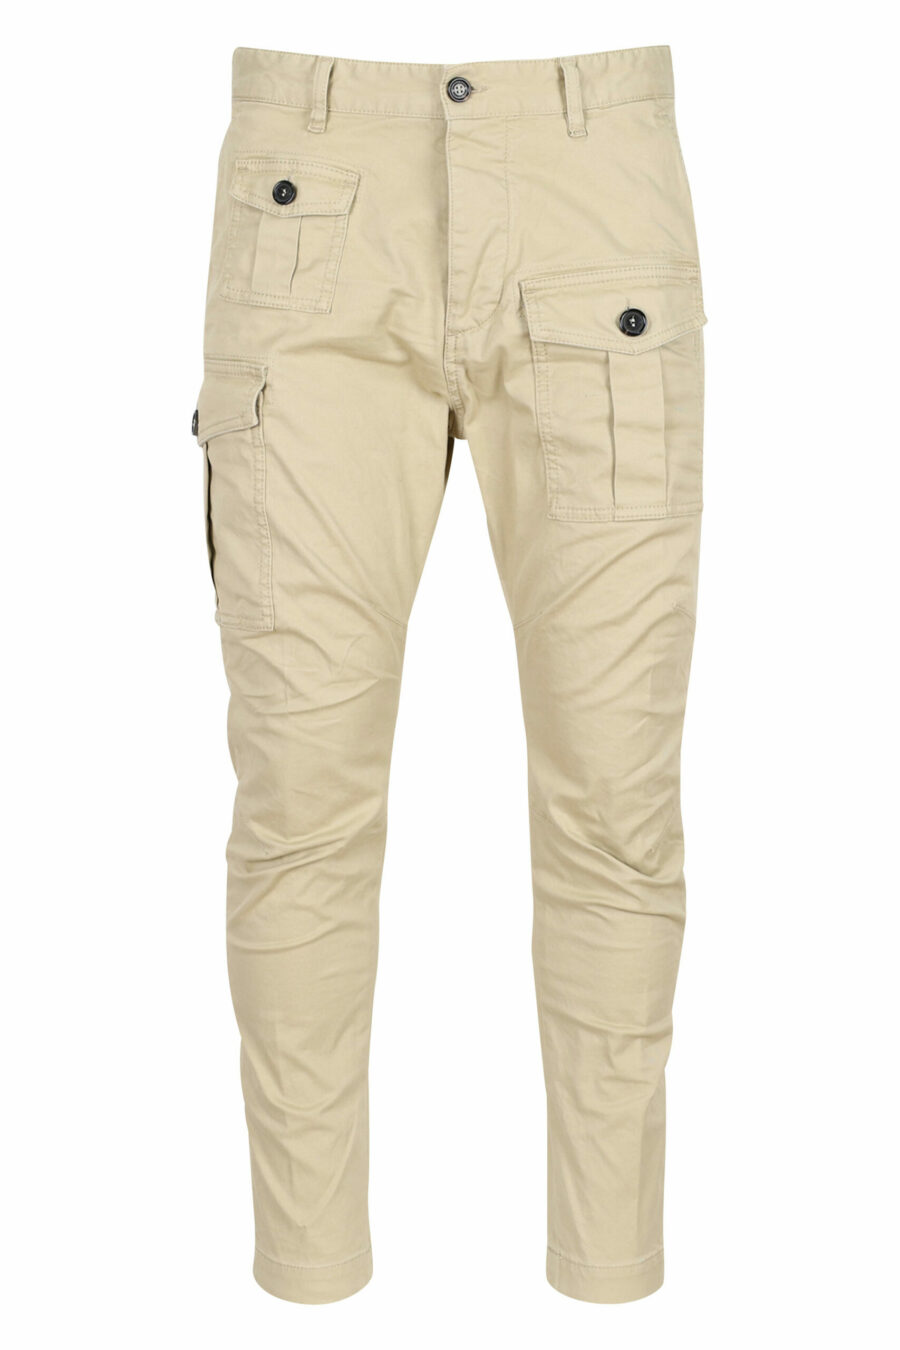 Pantalón "sexy cargo pant" beige con bolsillos laterales - 8052134973615 scaled